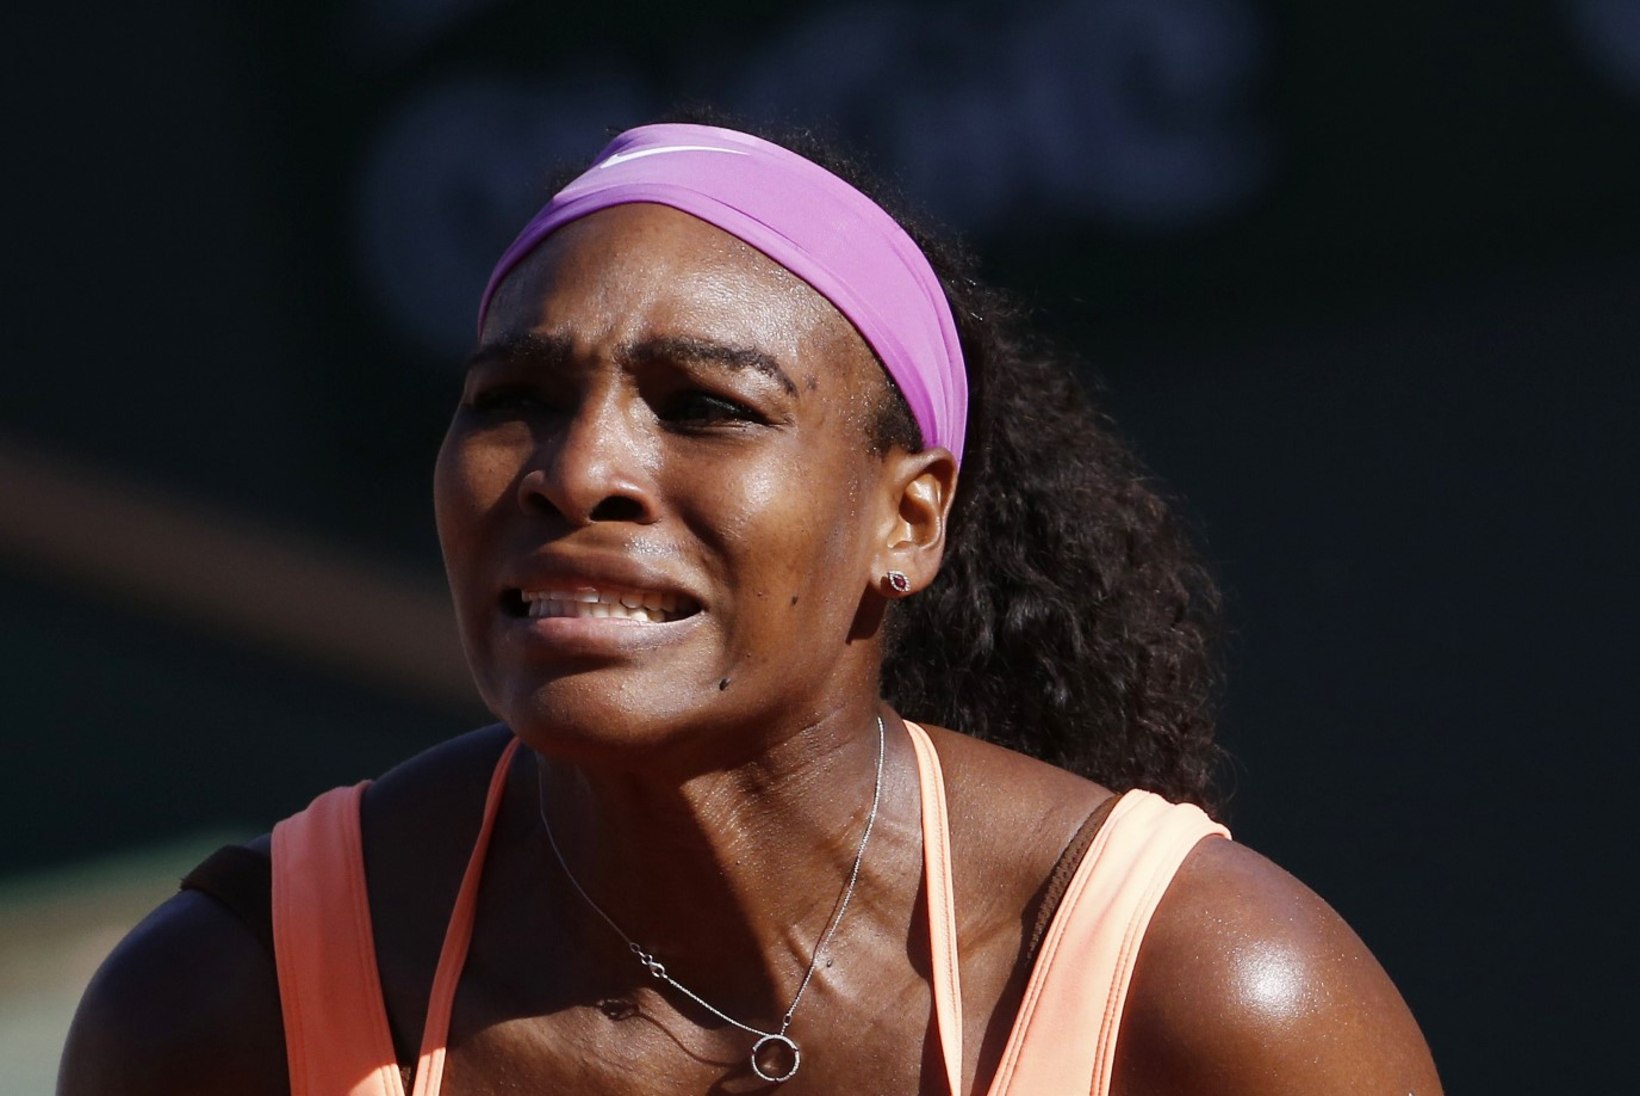 GALERII | Avaseti kaotanud Serena Williams tagus Bacsinszky lõpuks maa alla